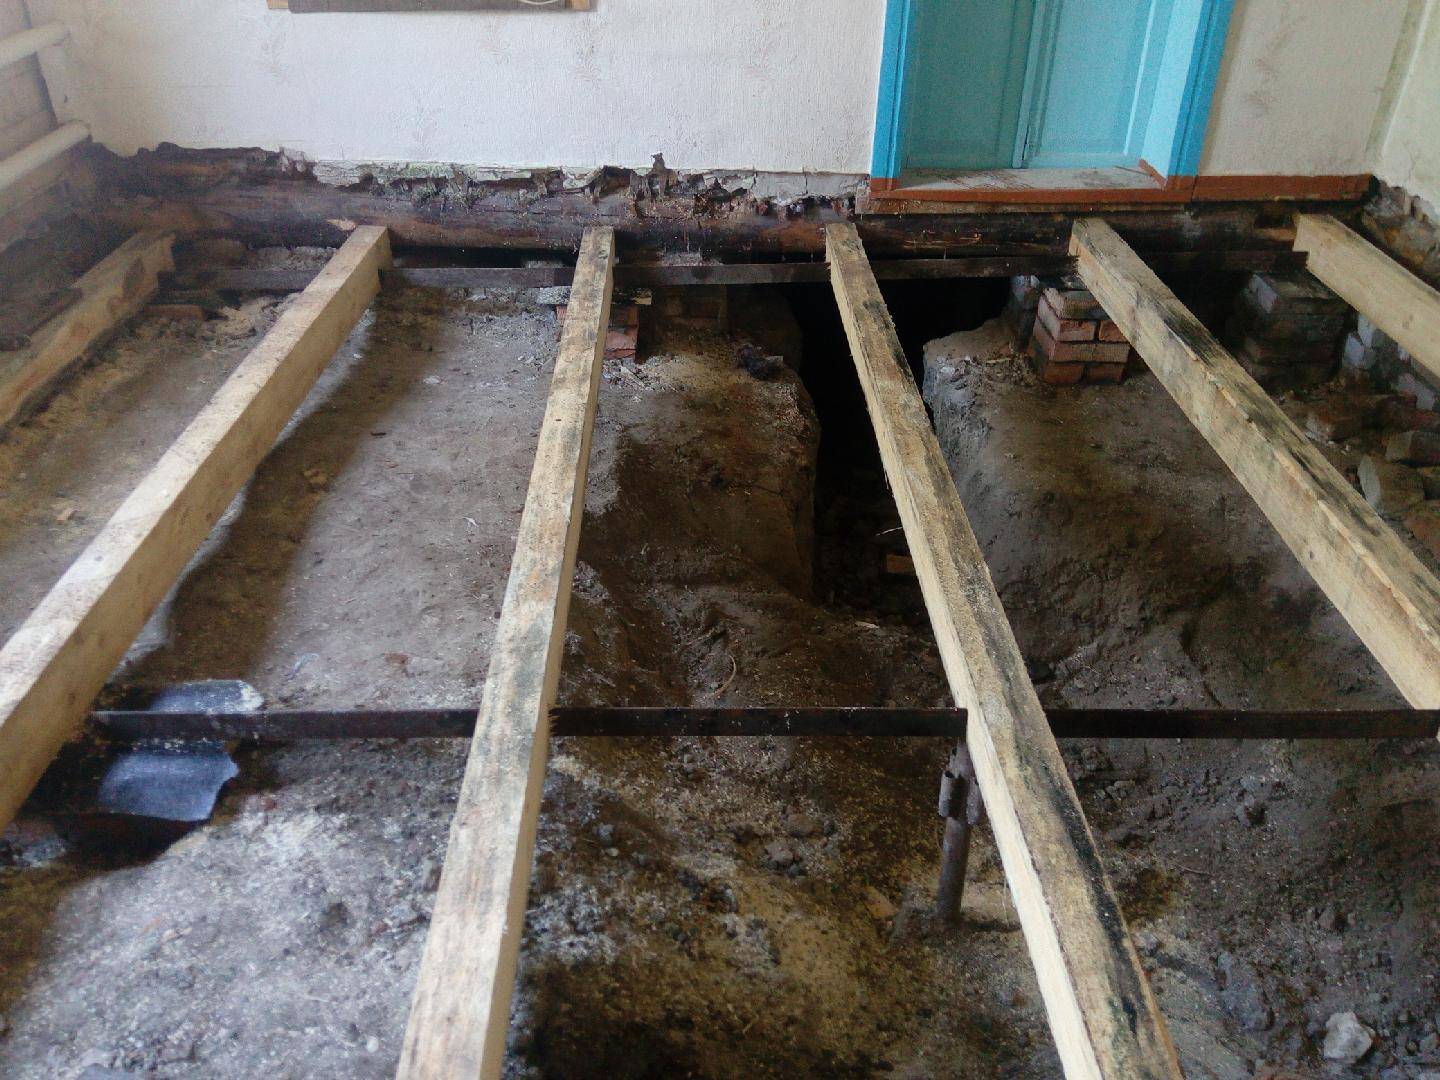 Ремонт пола в доме с деревянными перекрытиями — пошаговая инструкция